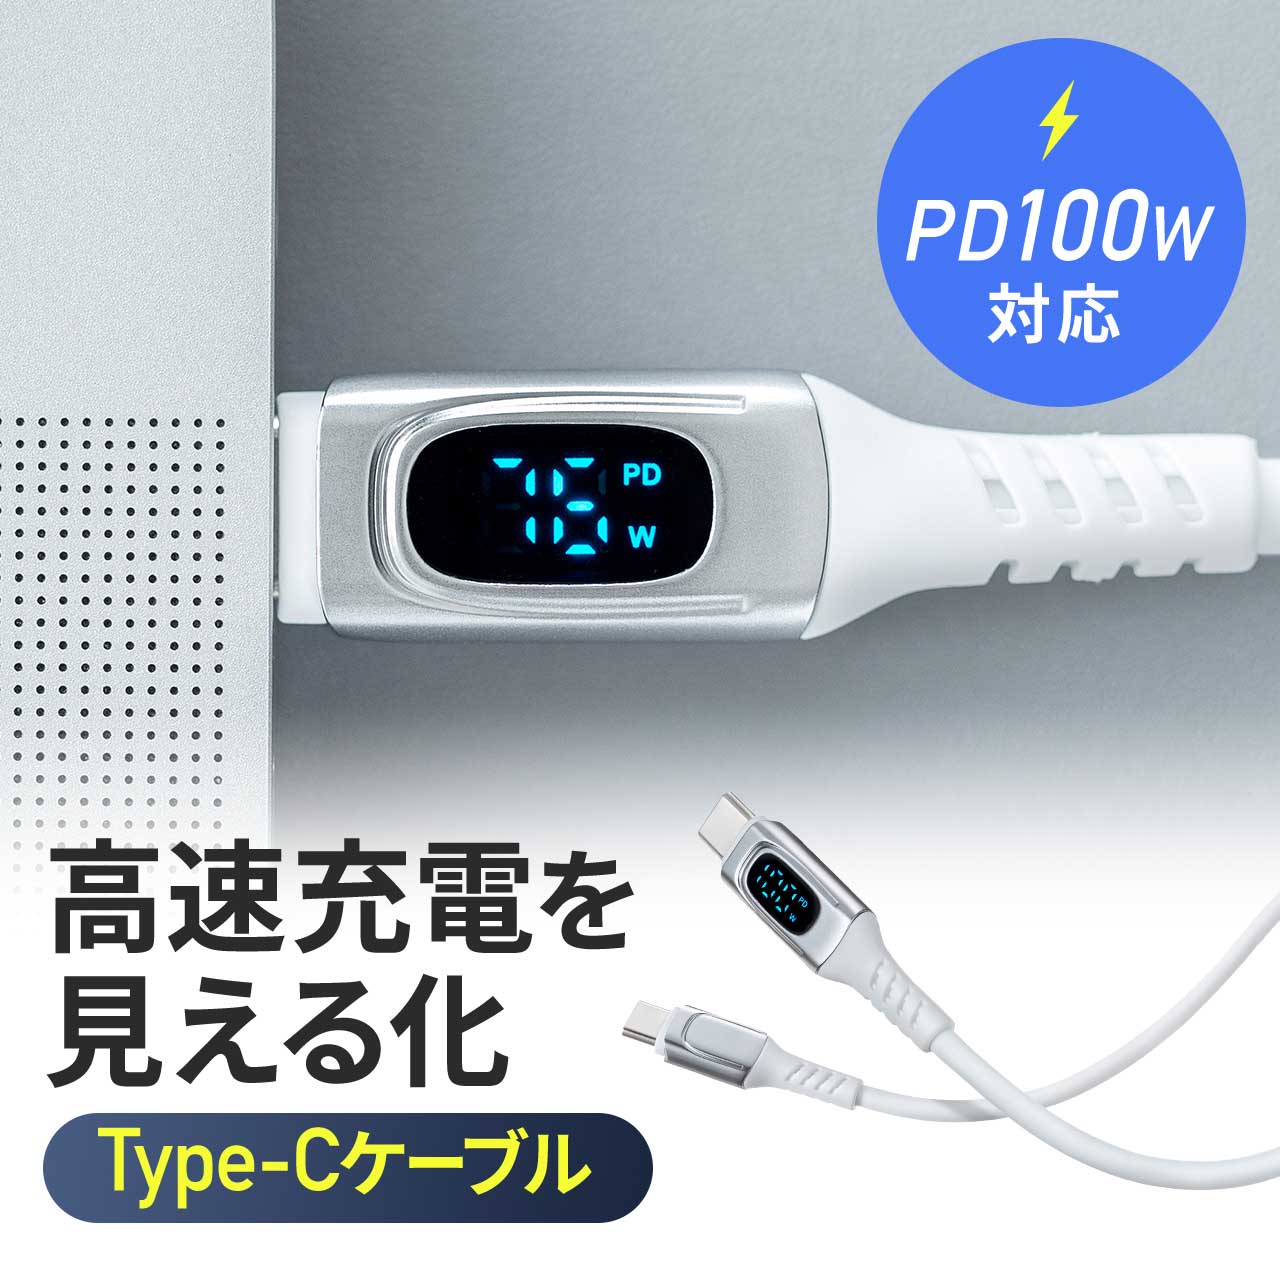 USB Type-Cケーブル USB PD  電力表示 ワット数 確認できる 240W対応 絡みにくい 急速充電 充電 データ転送 スマホ タブレット 1m 500-USB078